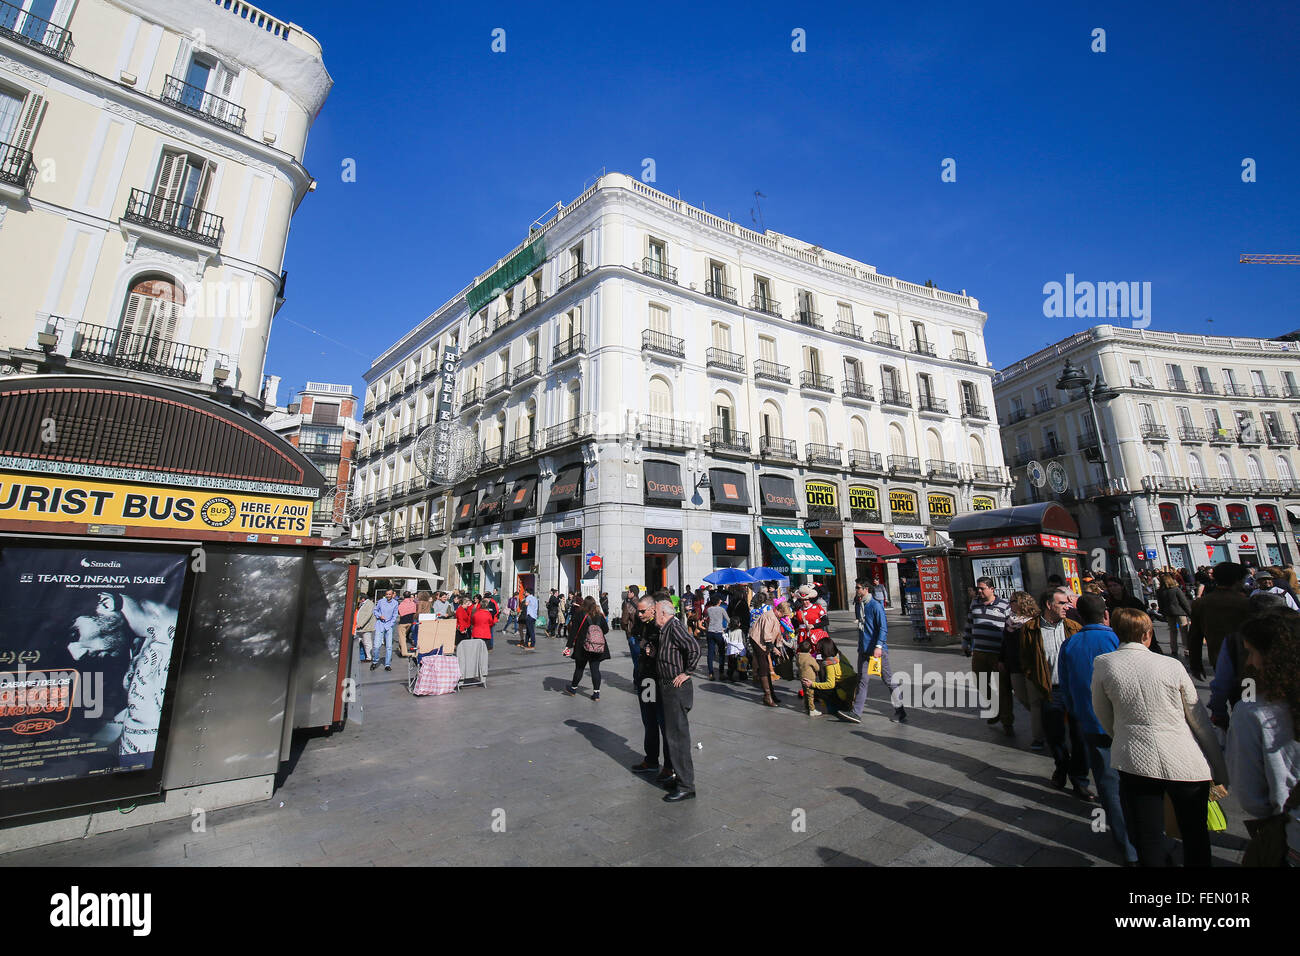 MADRID, Spagna - 14 novembre 2015: Puerta del Sol, uno dei più noti e frequentati luoghi di Madrid in Spagna Foto Stock